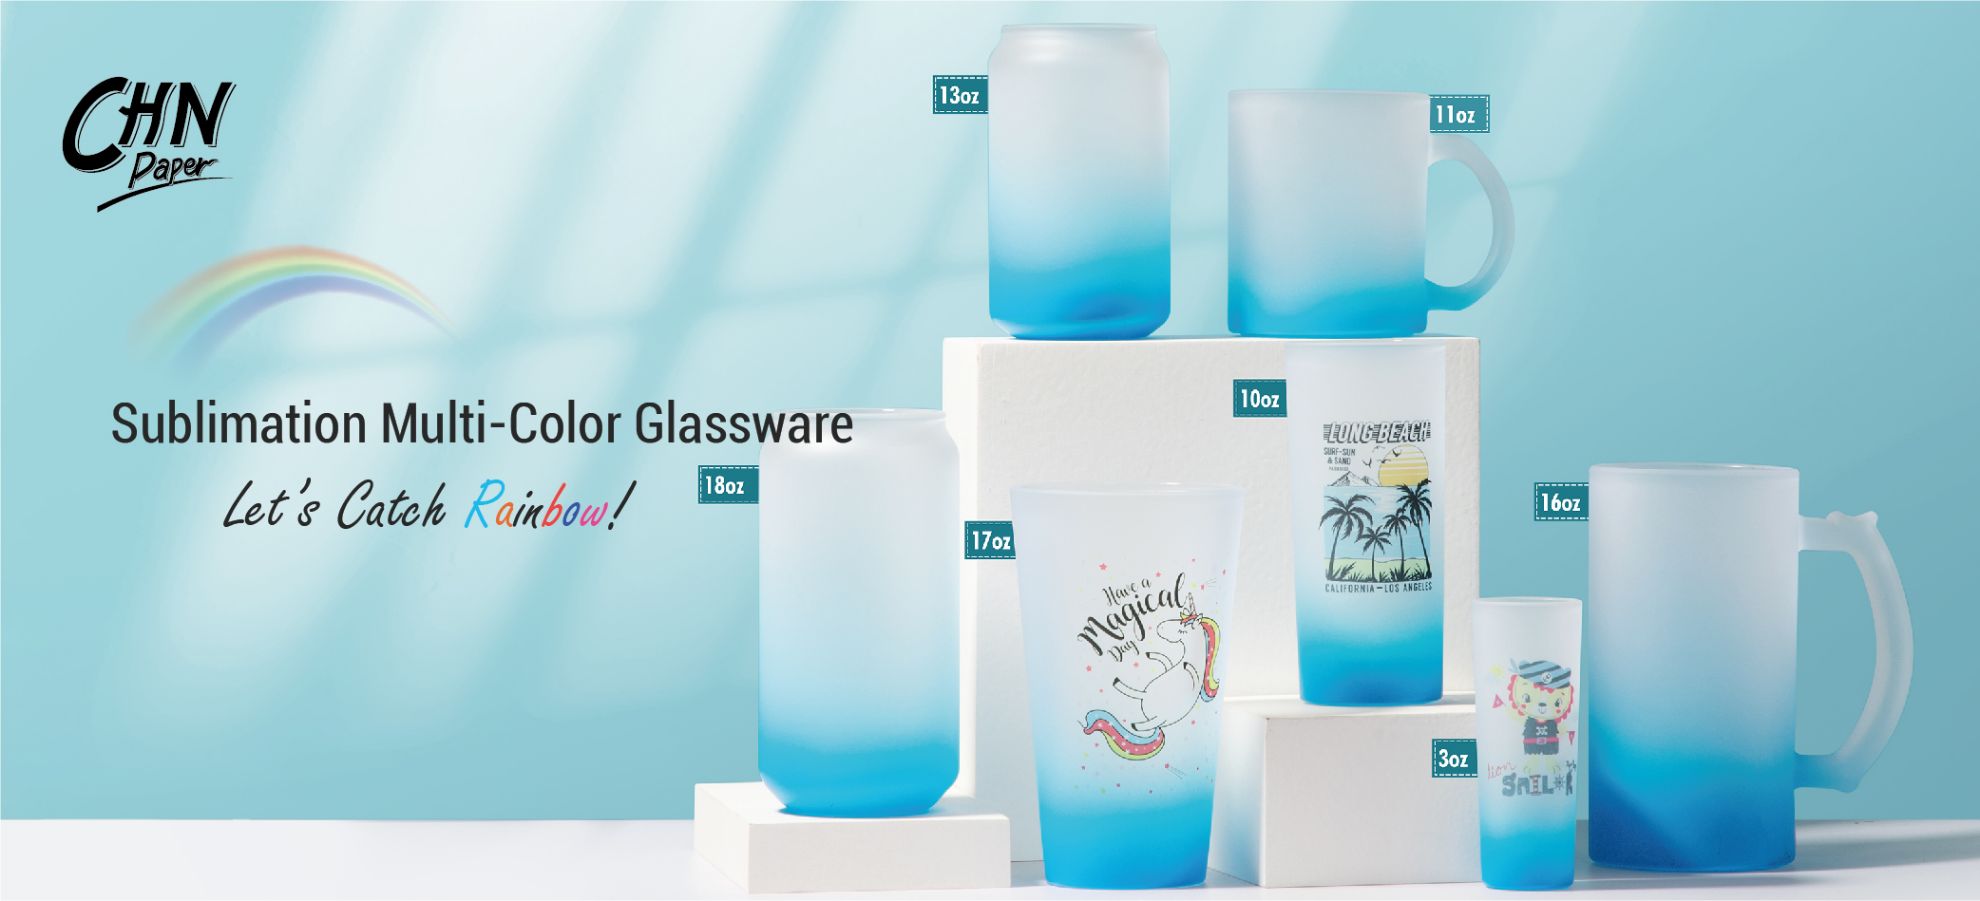 Multi-Color Glassware